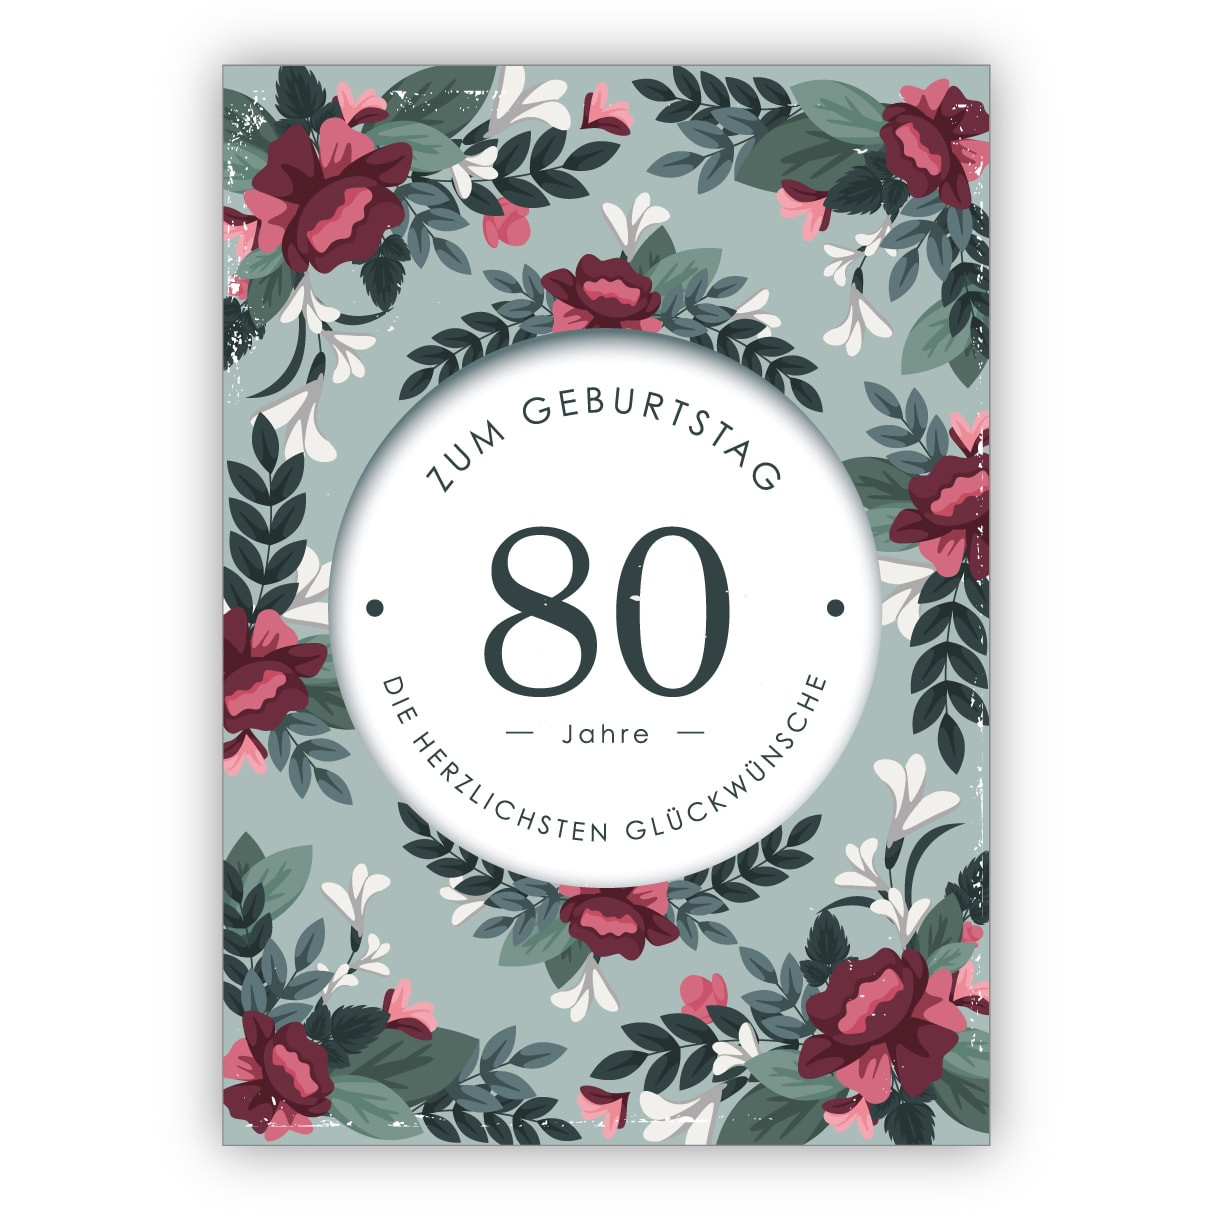 80 Geburtstag Blumen
 Feine elegante Geburtstagskarte mit dekorativen Blumen